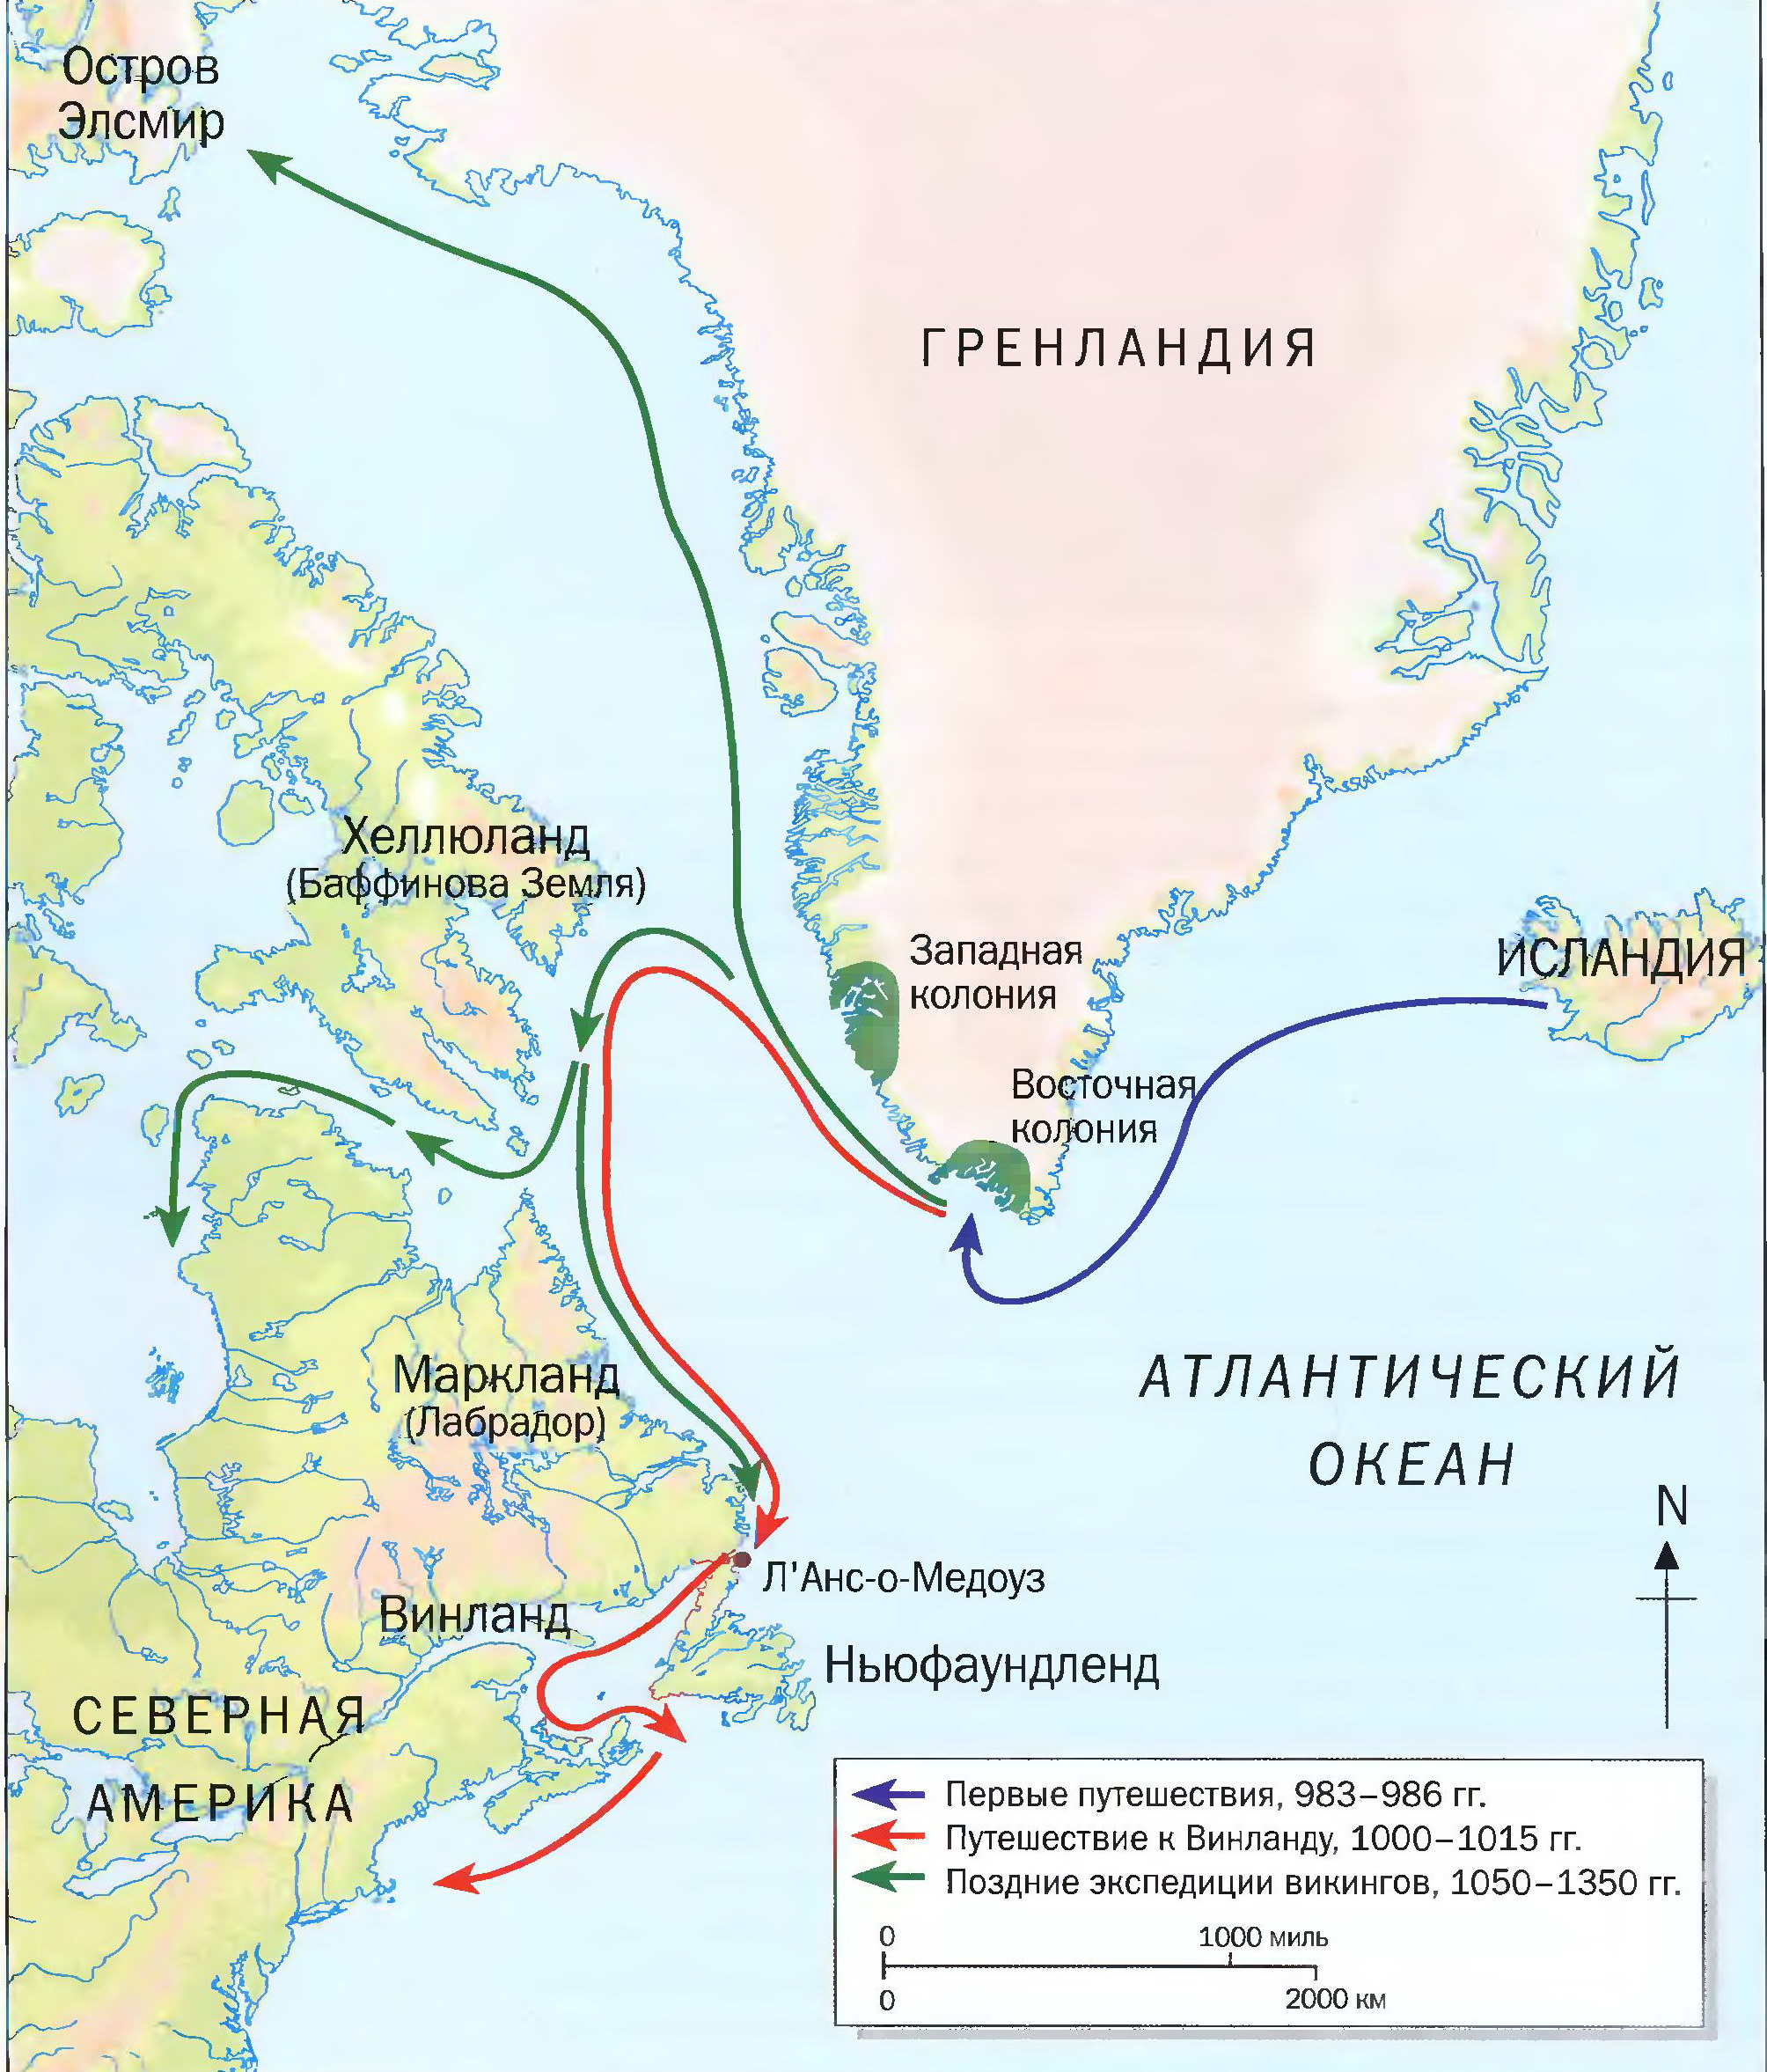 Путешествия викингов через Северную Атлантику